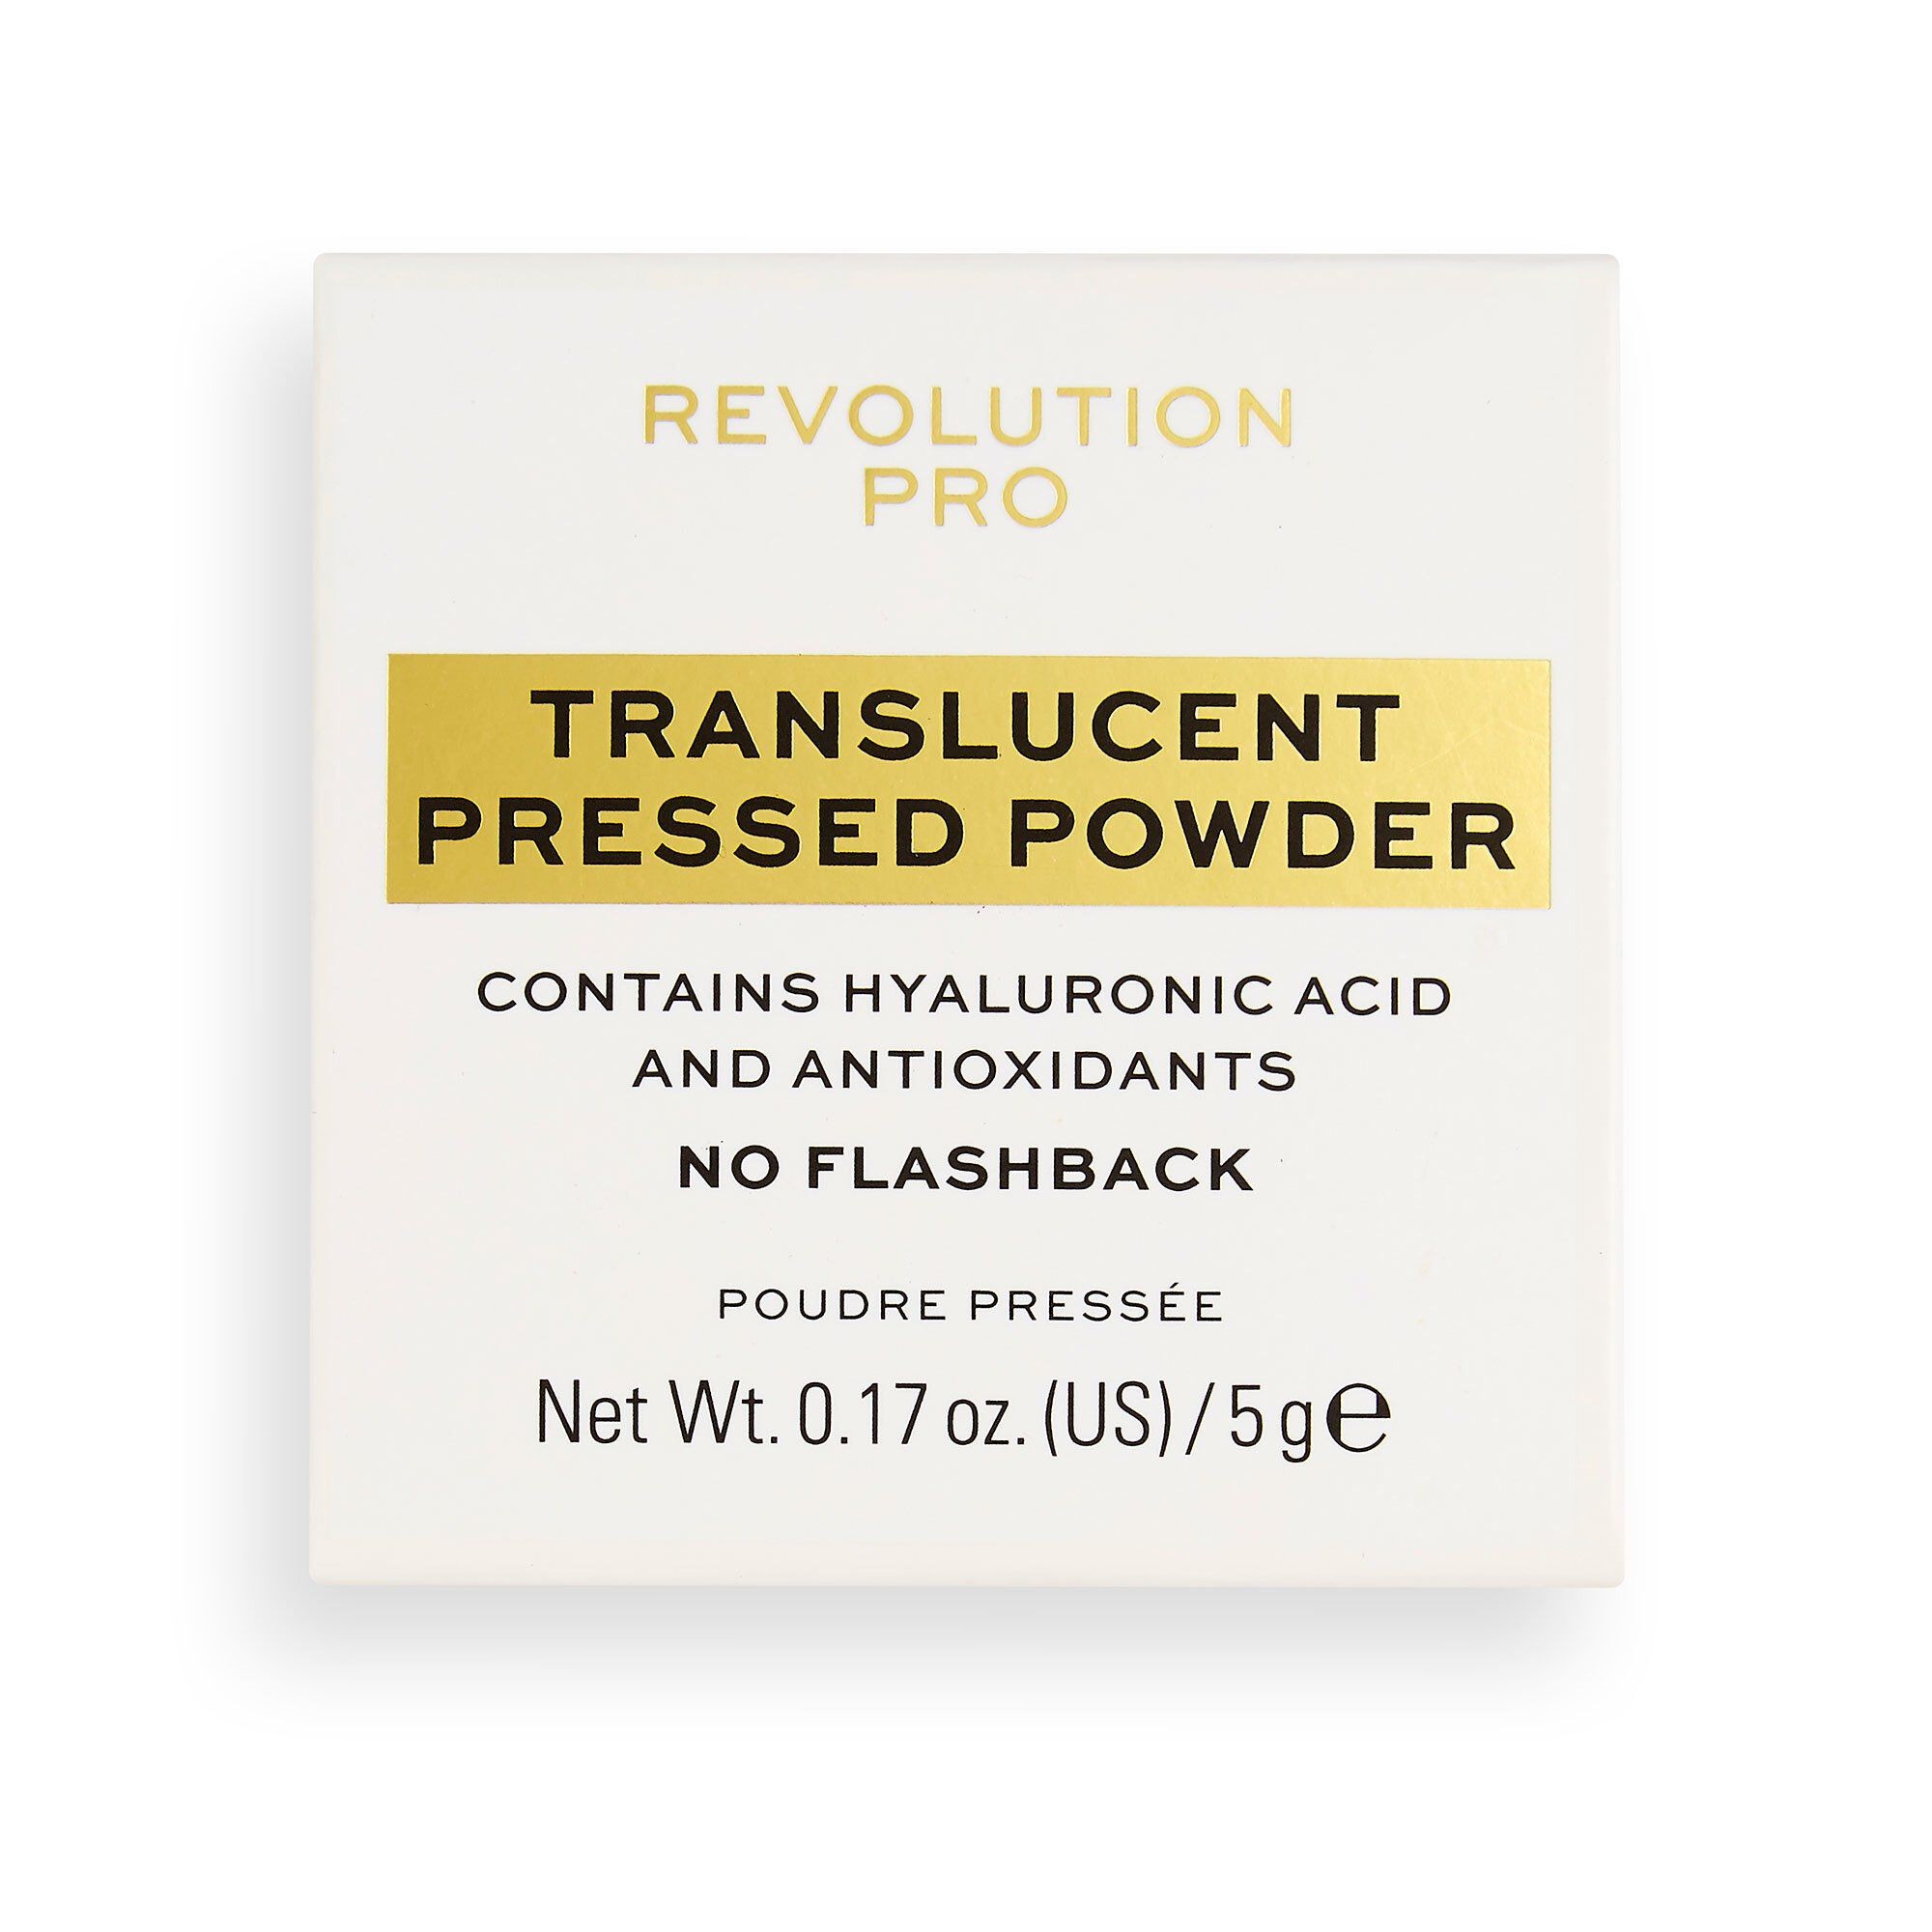 Puder - Translucent Pressed Powder